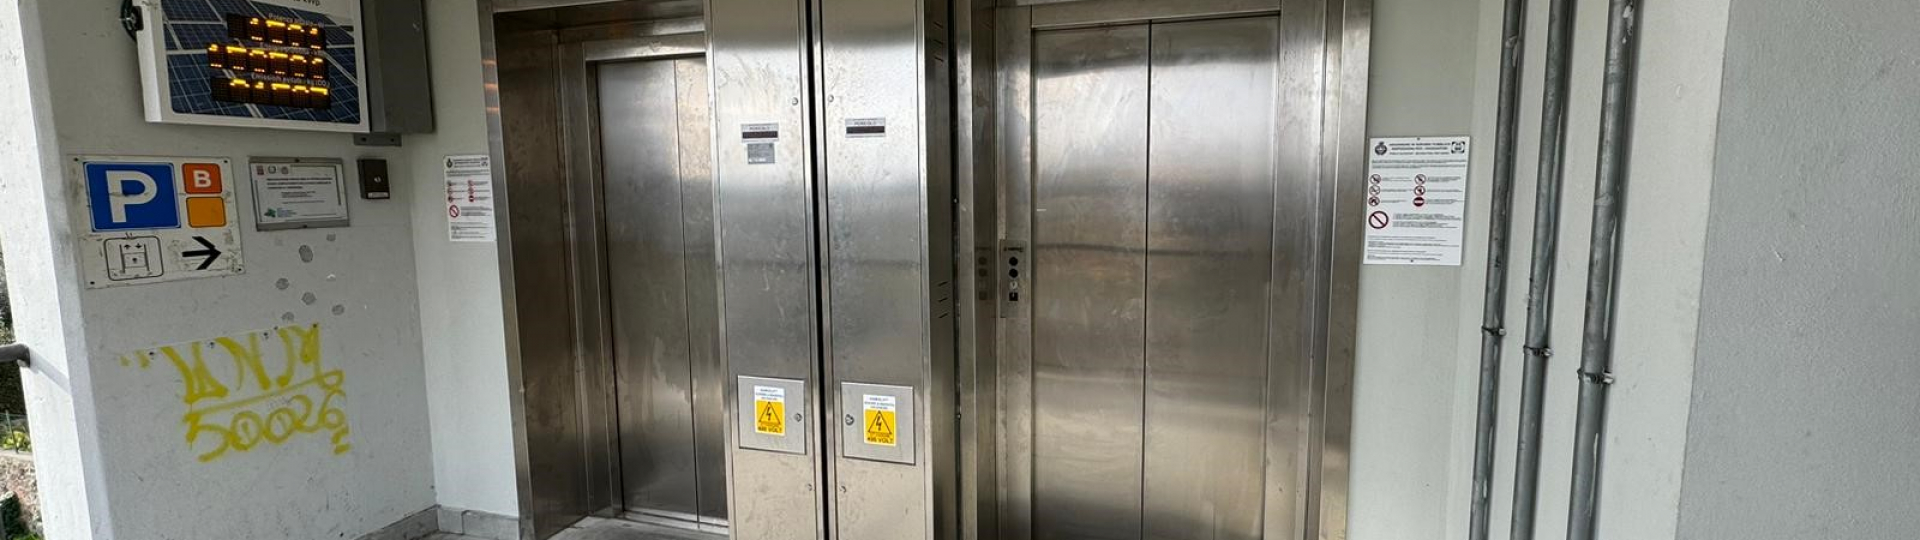 immagine nuovi ascensori Stianti